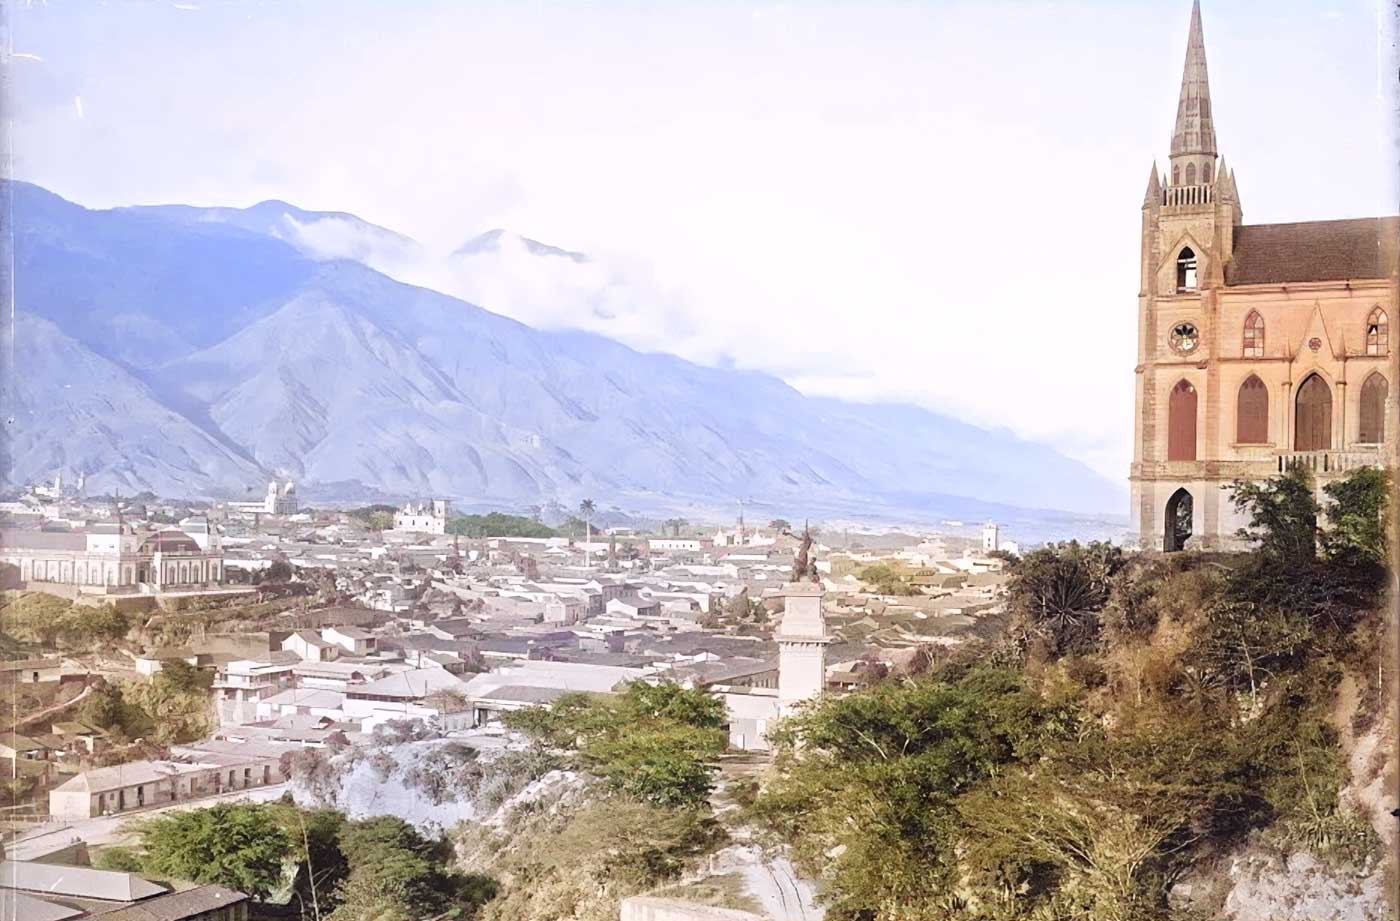 Caracas City Old Photo (1900s)